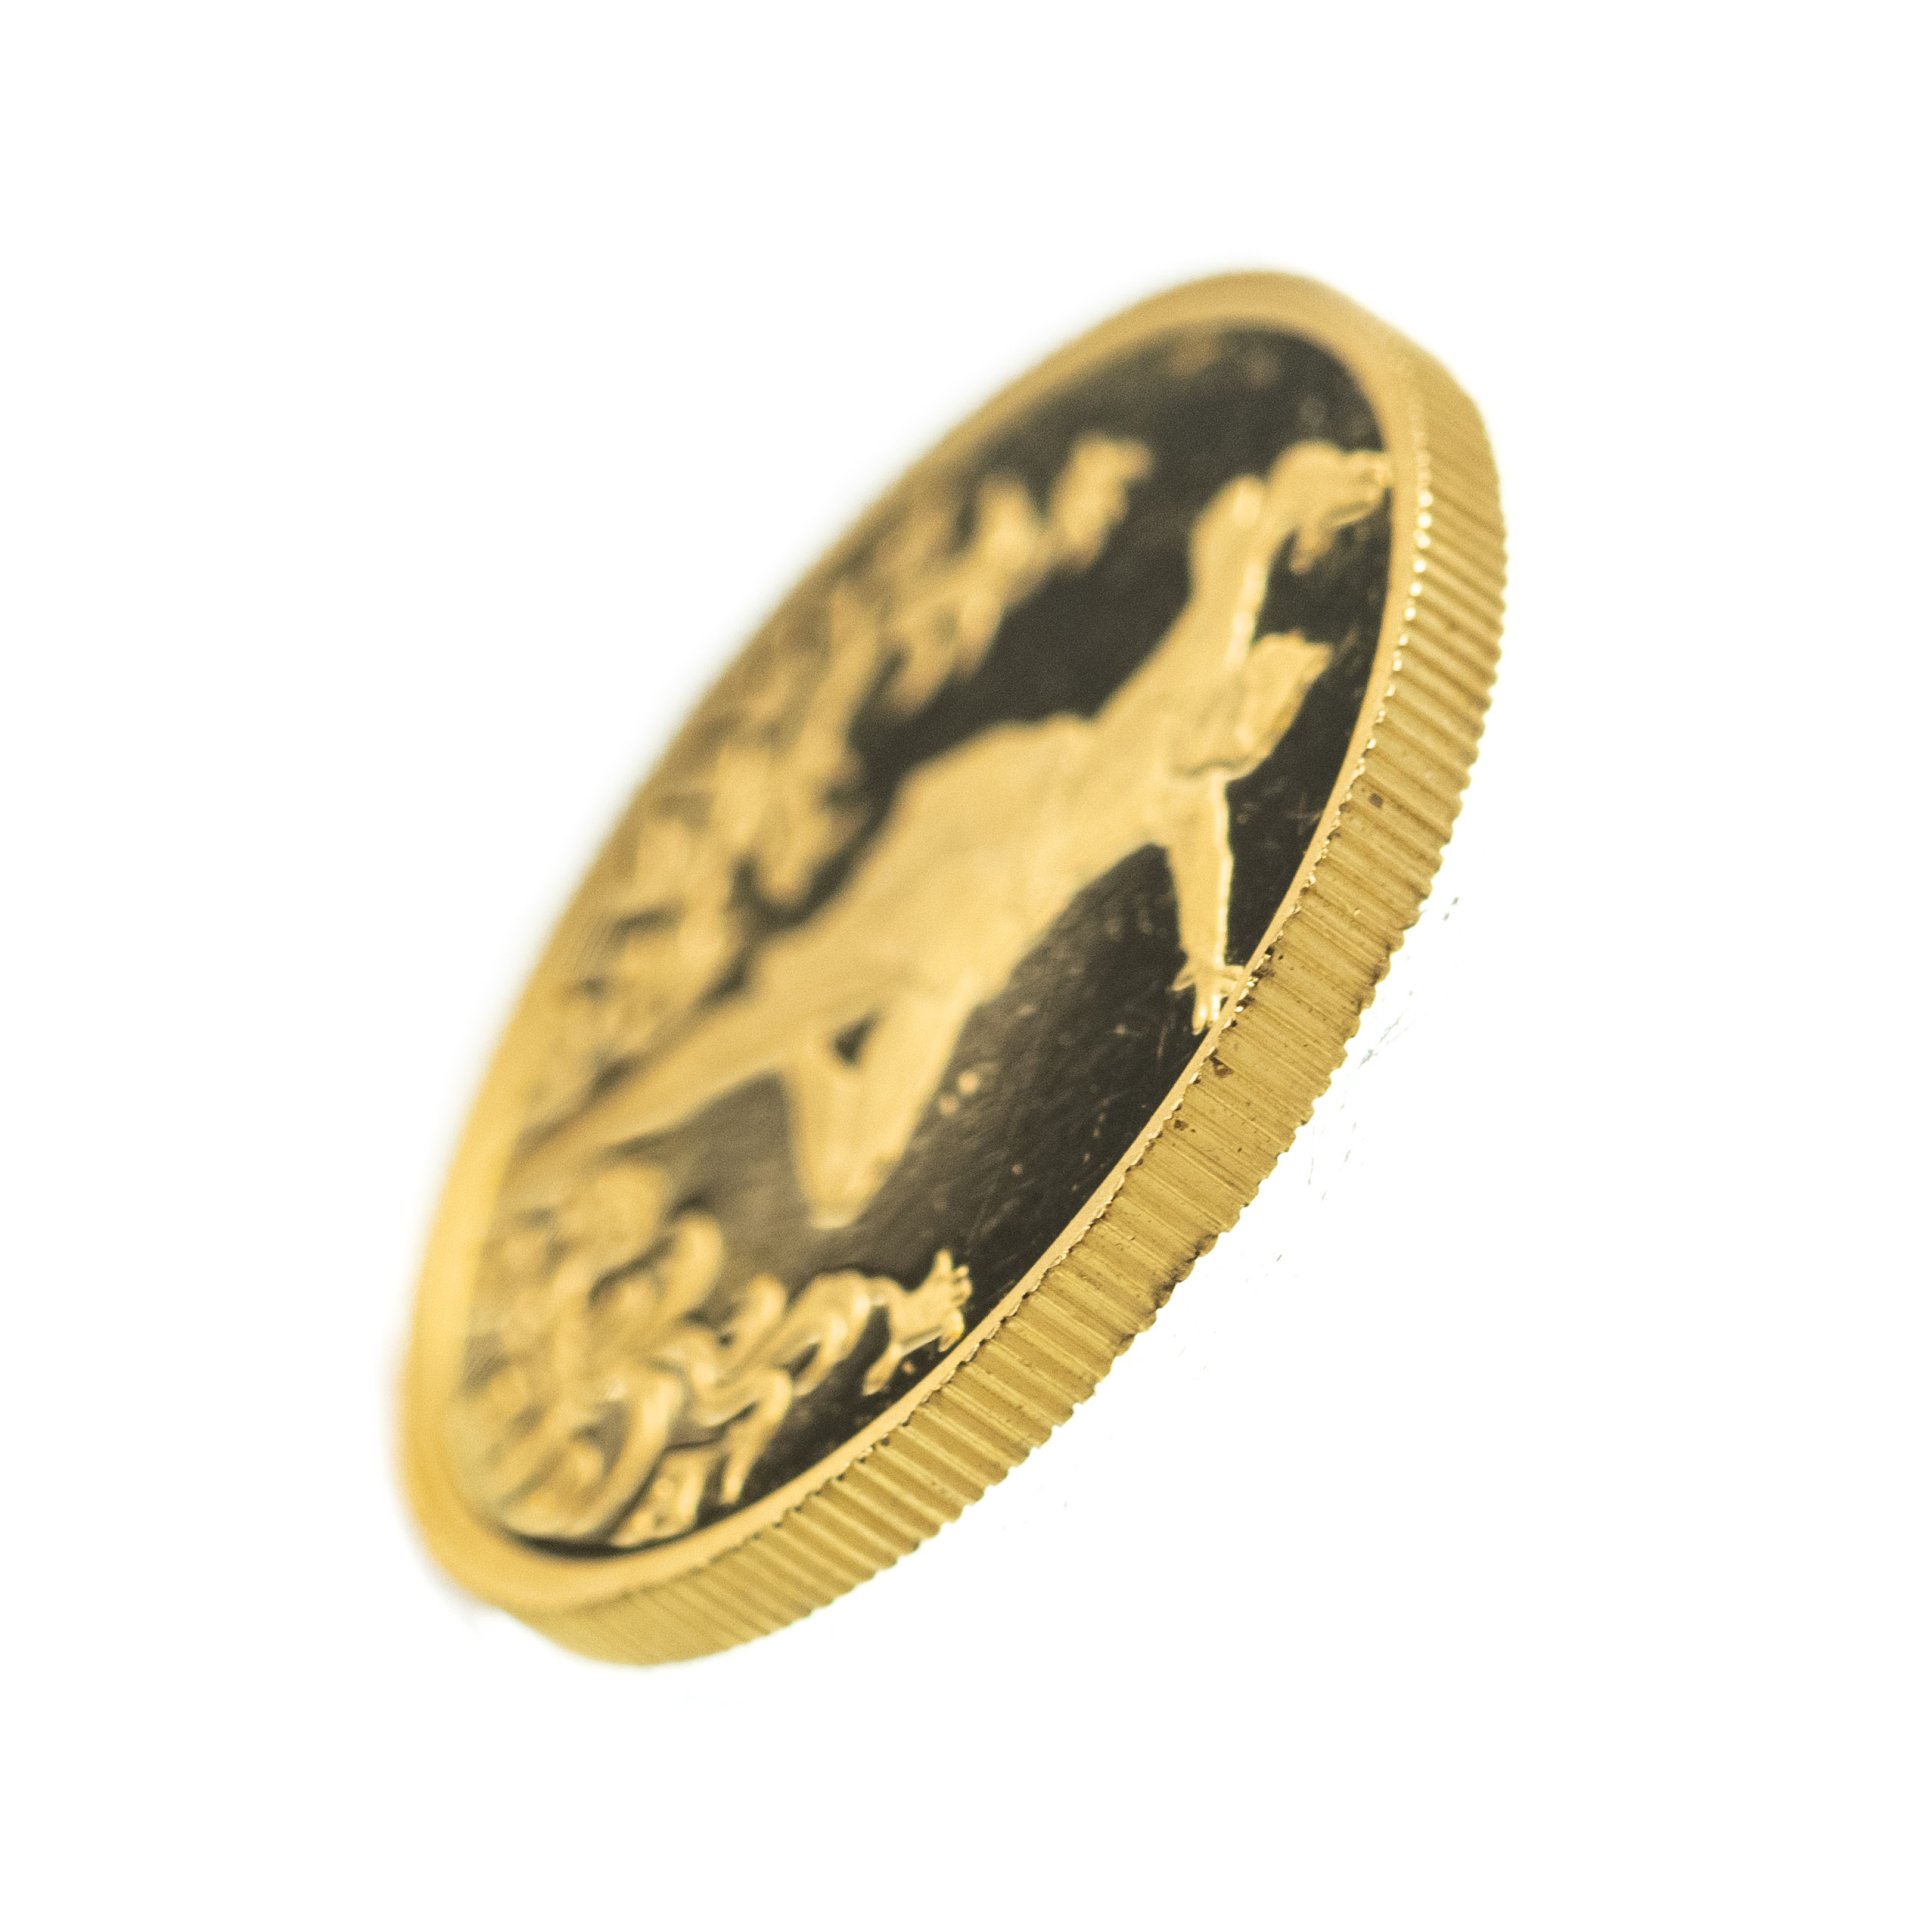 Монеты из драгоценных металлов купить в банке